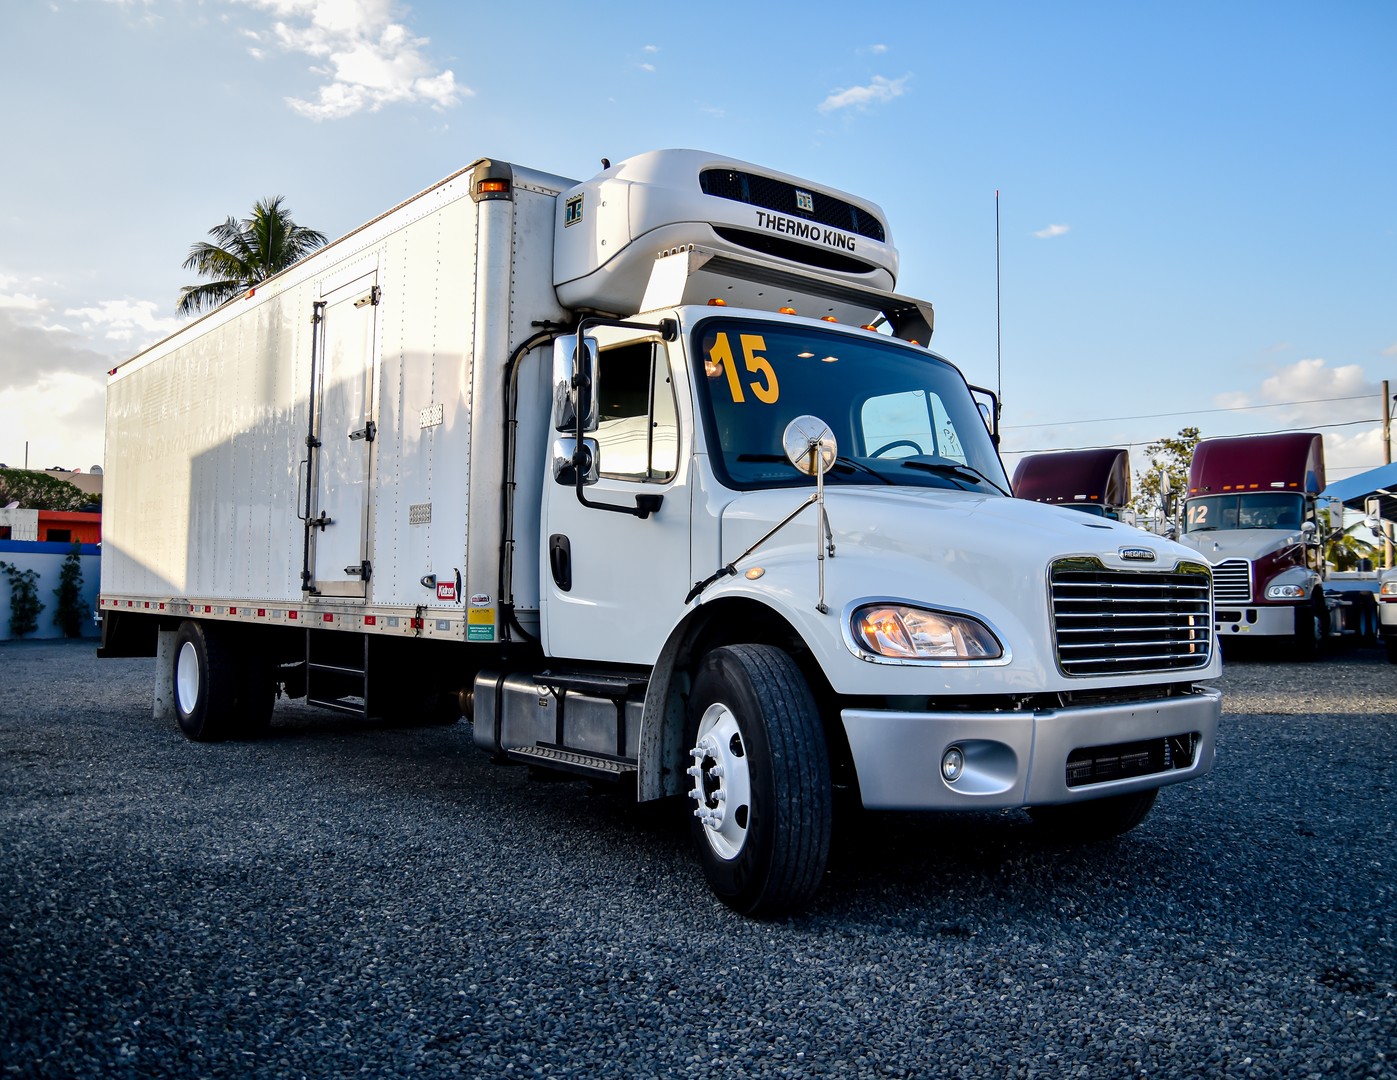 camiones y vehiculos pesados - Freightliner M2 Refrigerado 2015
